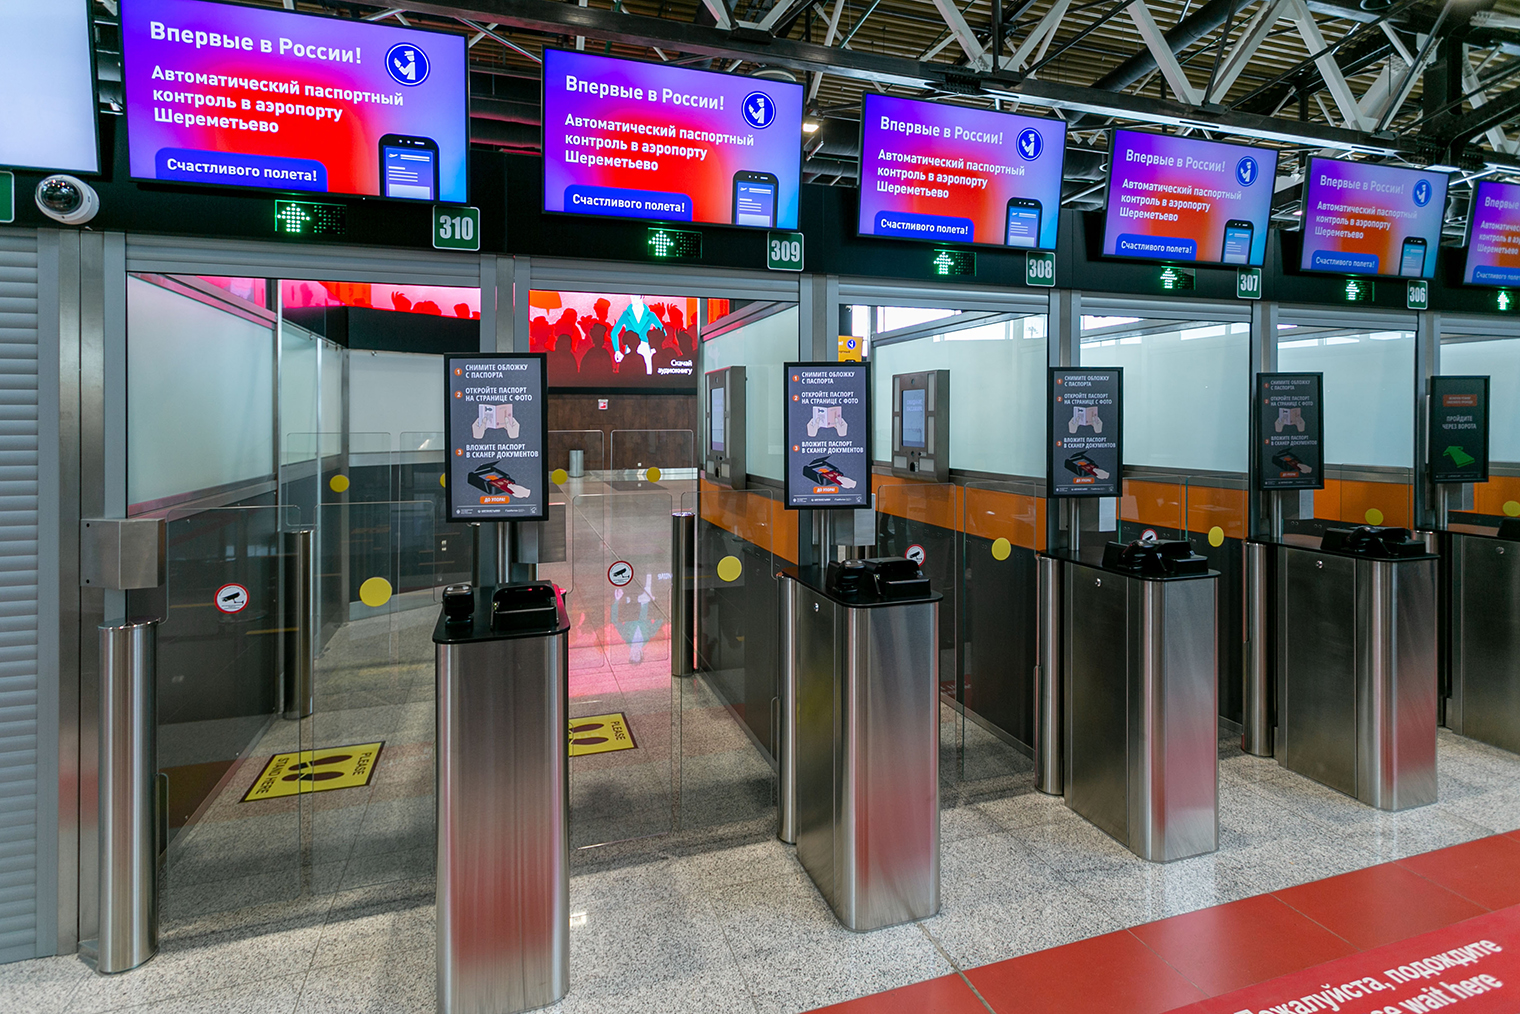 Такие кабины автоматического паспортного контроля установили в Шереметьеве. Источник: пресс-служба Шереметьева